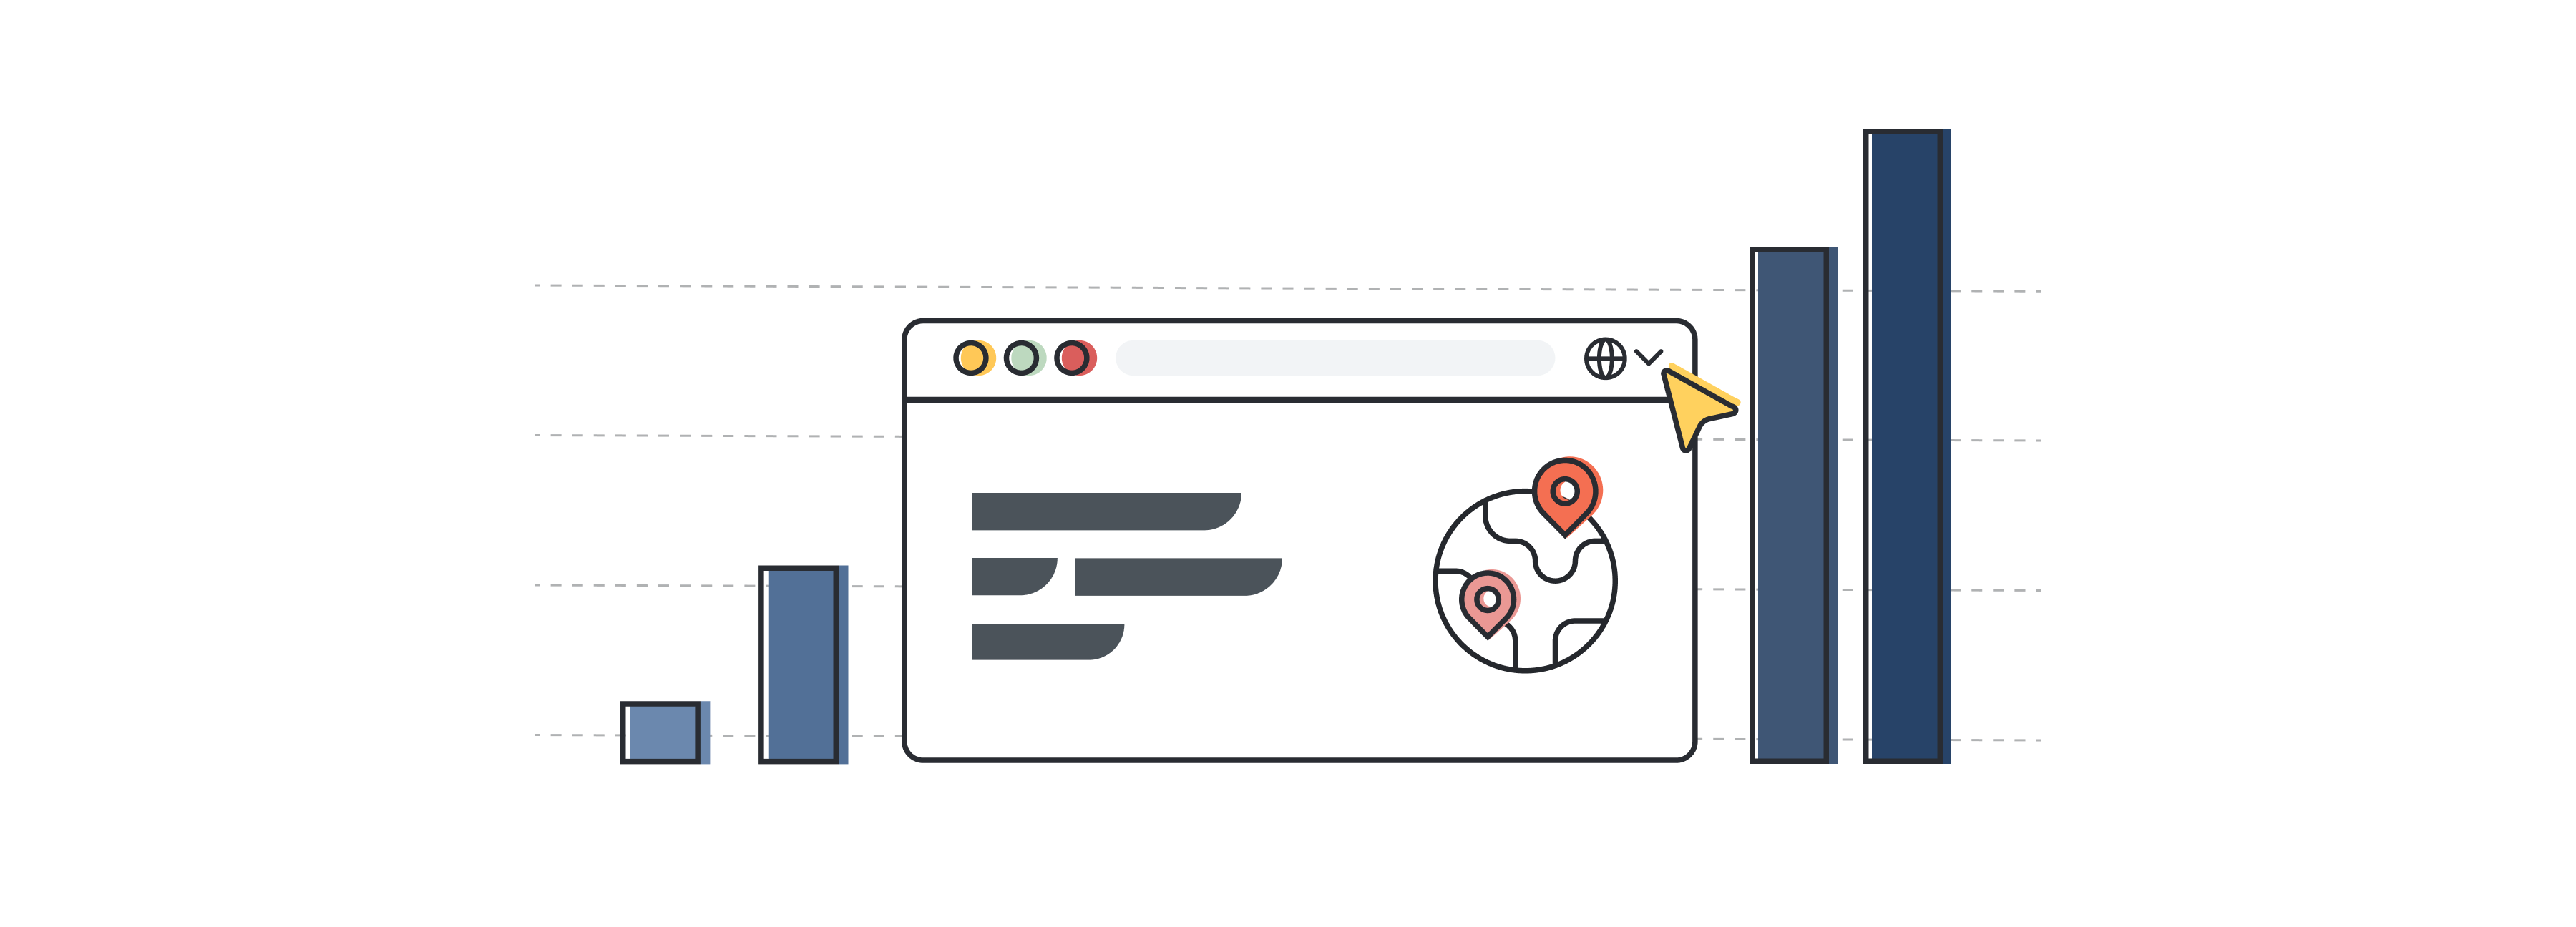 Illustration eines Website-Interfaces, das die Lokalisierungs- und Übersetzungsbranche symbolisieren soll. Die Illustration zeigt Diagramm-Balken, die das Wachstum eines Unternehmens anzeigen.